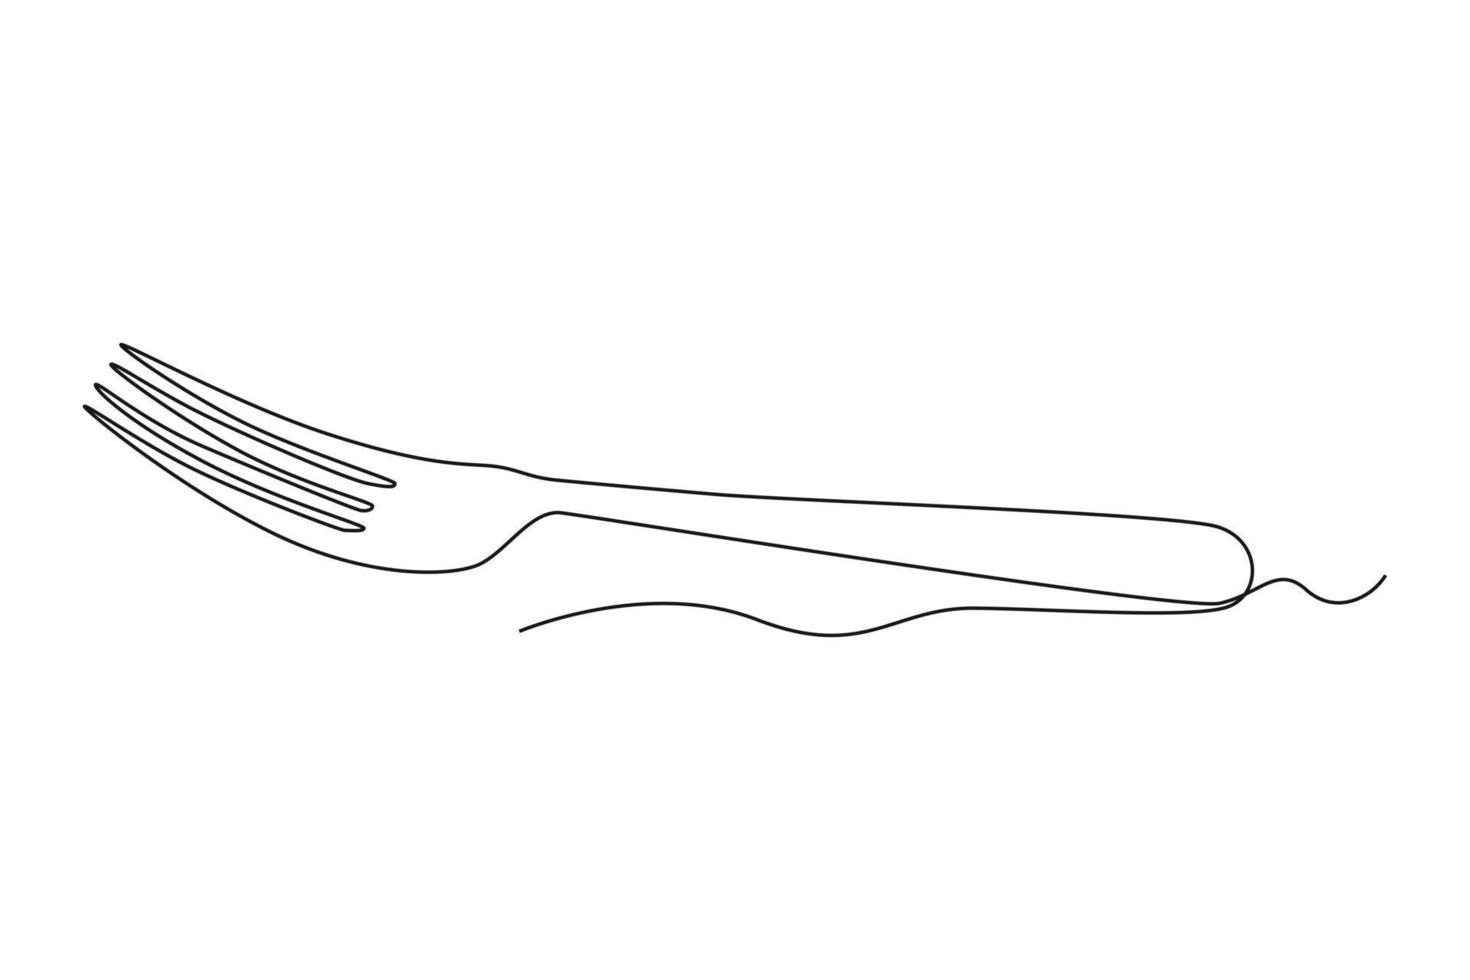 single een lijn tekening vork. serviesgoed concept. doorlopend lijn trek ontwerp grafisch vector illustratie.